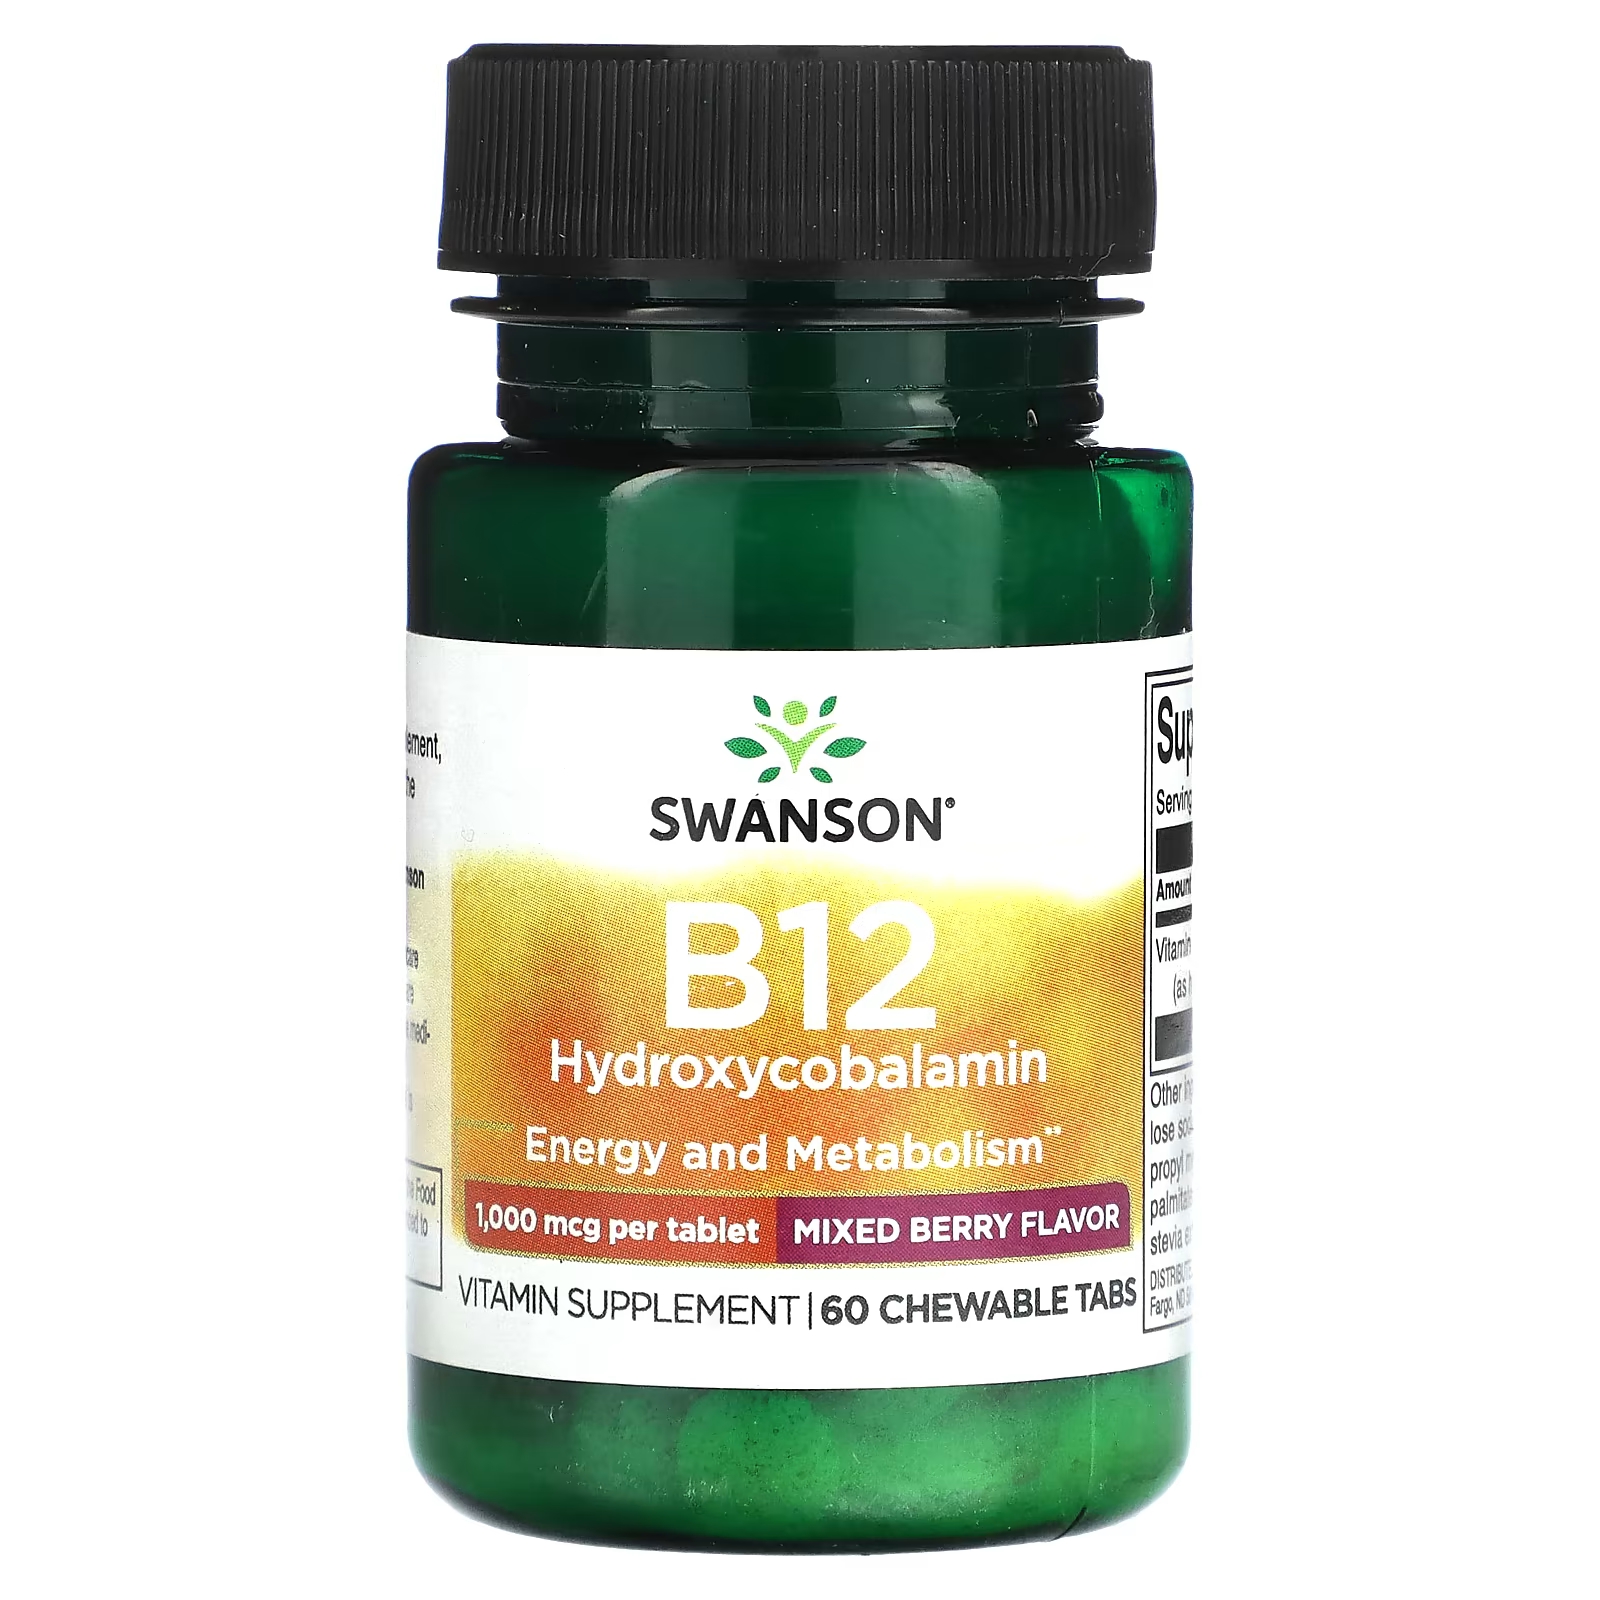 Витаминная добавка Swanson B12 смесь ягод с гидроксикобаламином, 60 жевательных таблеток смесь ягод naturesplus hema plex 60 жевательных таблеток